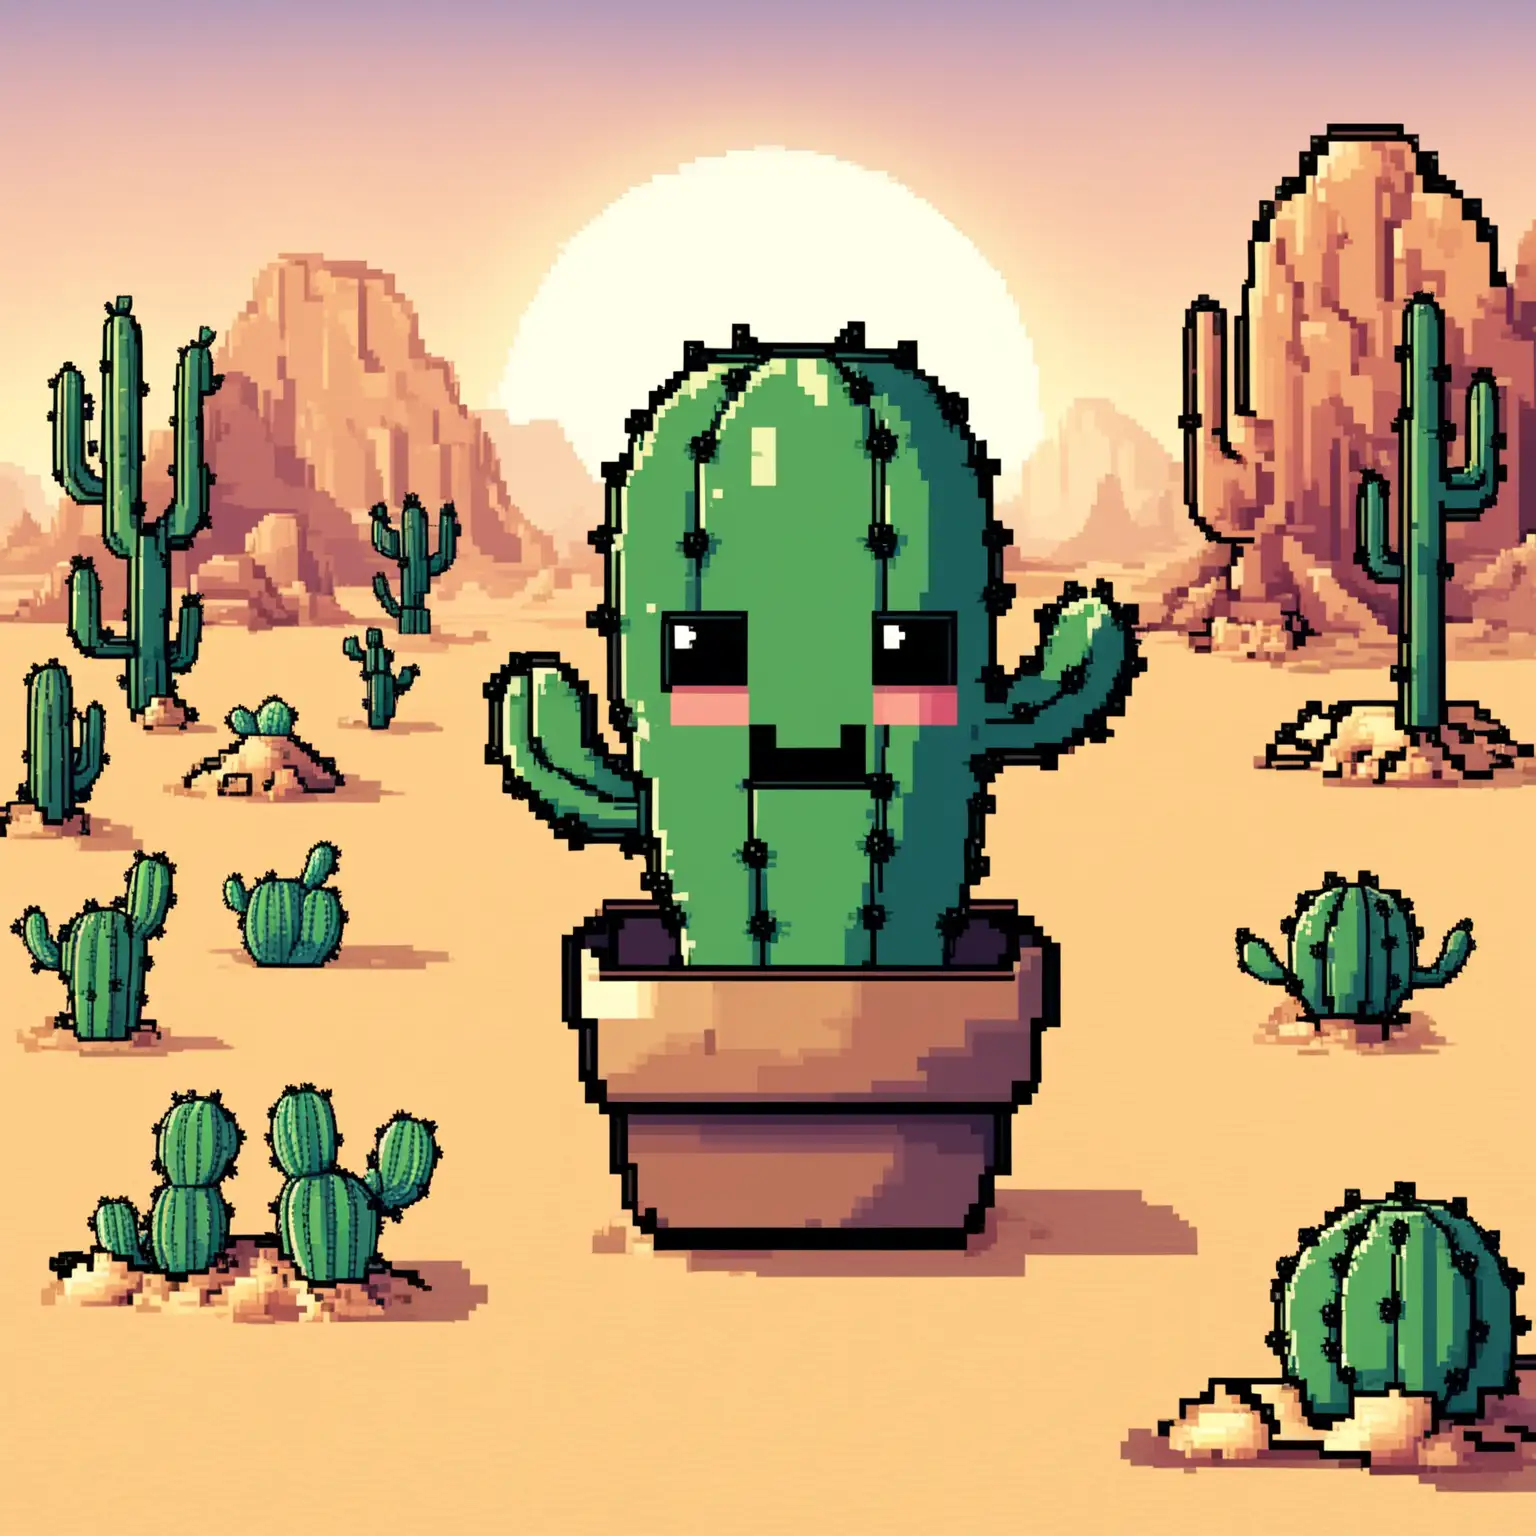 LittlePixelHappyCactus in the Desert in